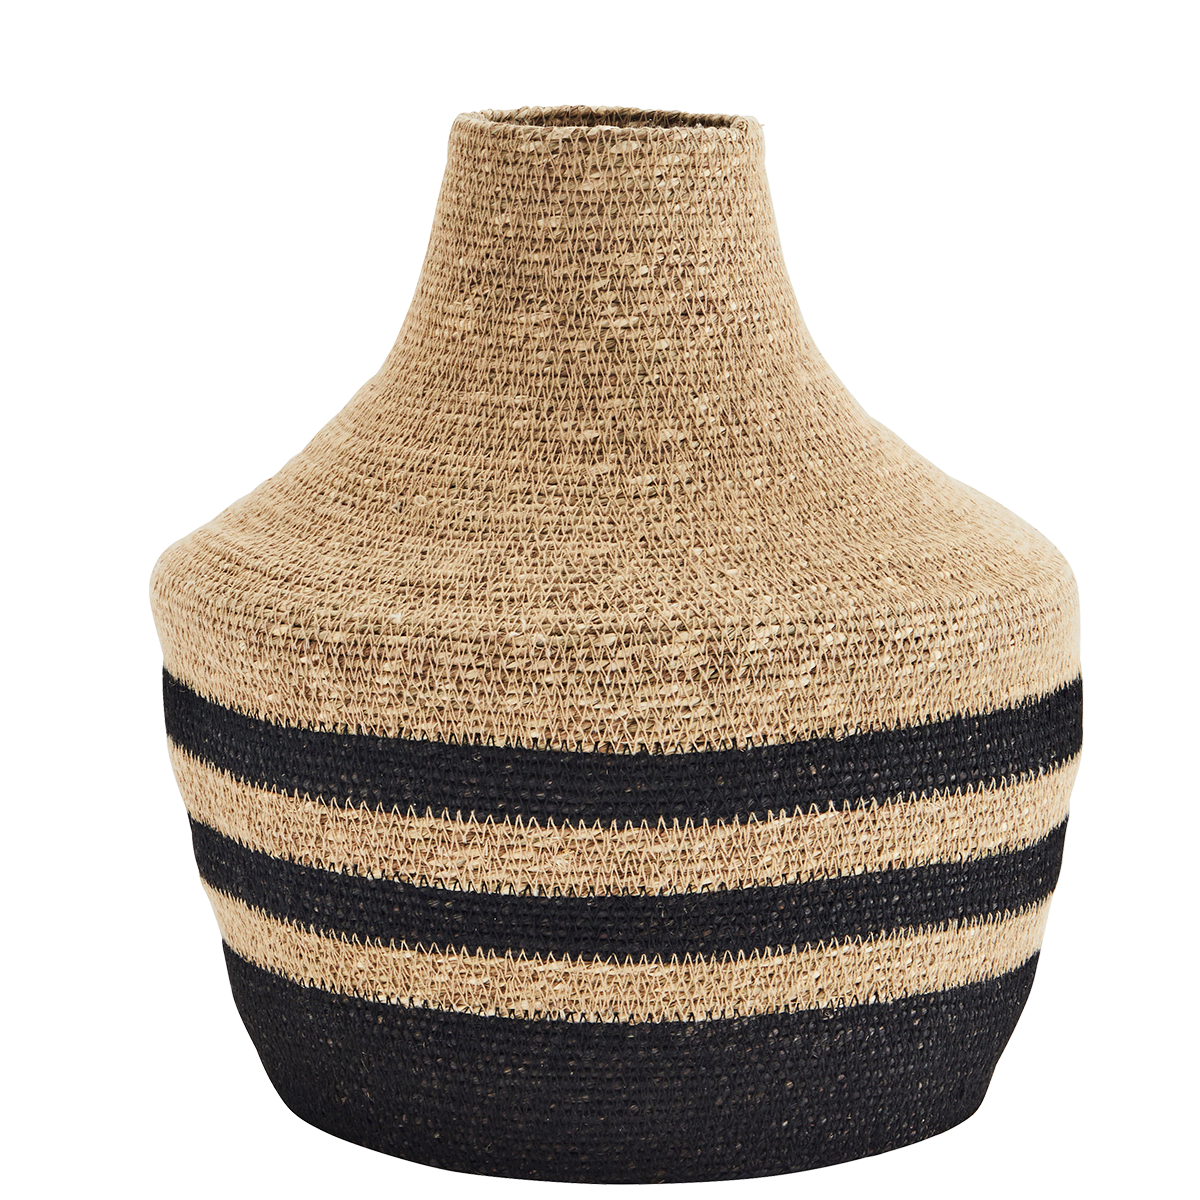 Seagrass vase w/ stitching